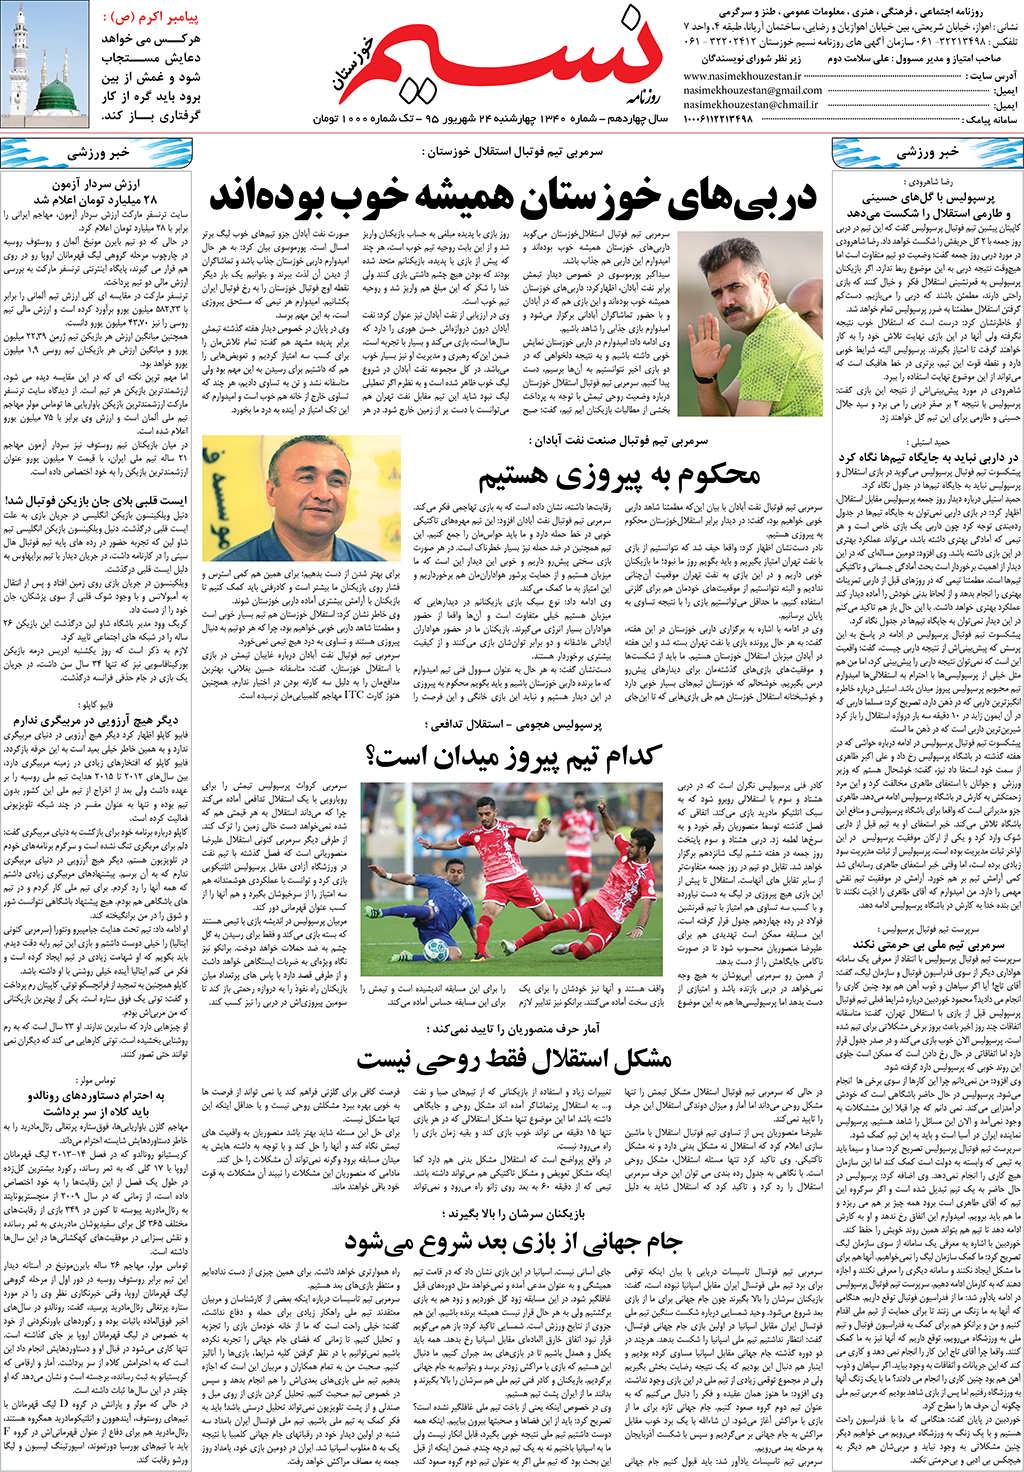 صفحه آخر روزنامه نسیم شماره 1340